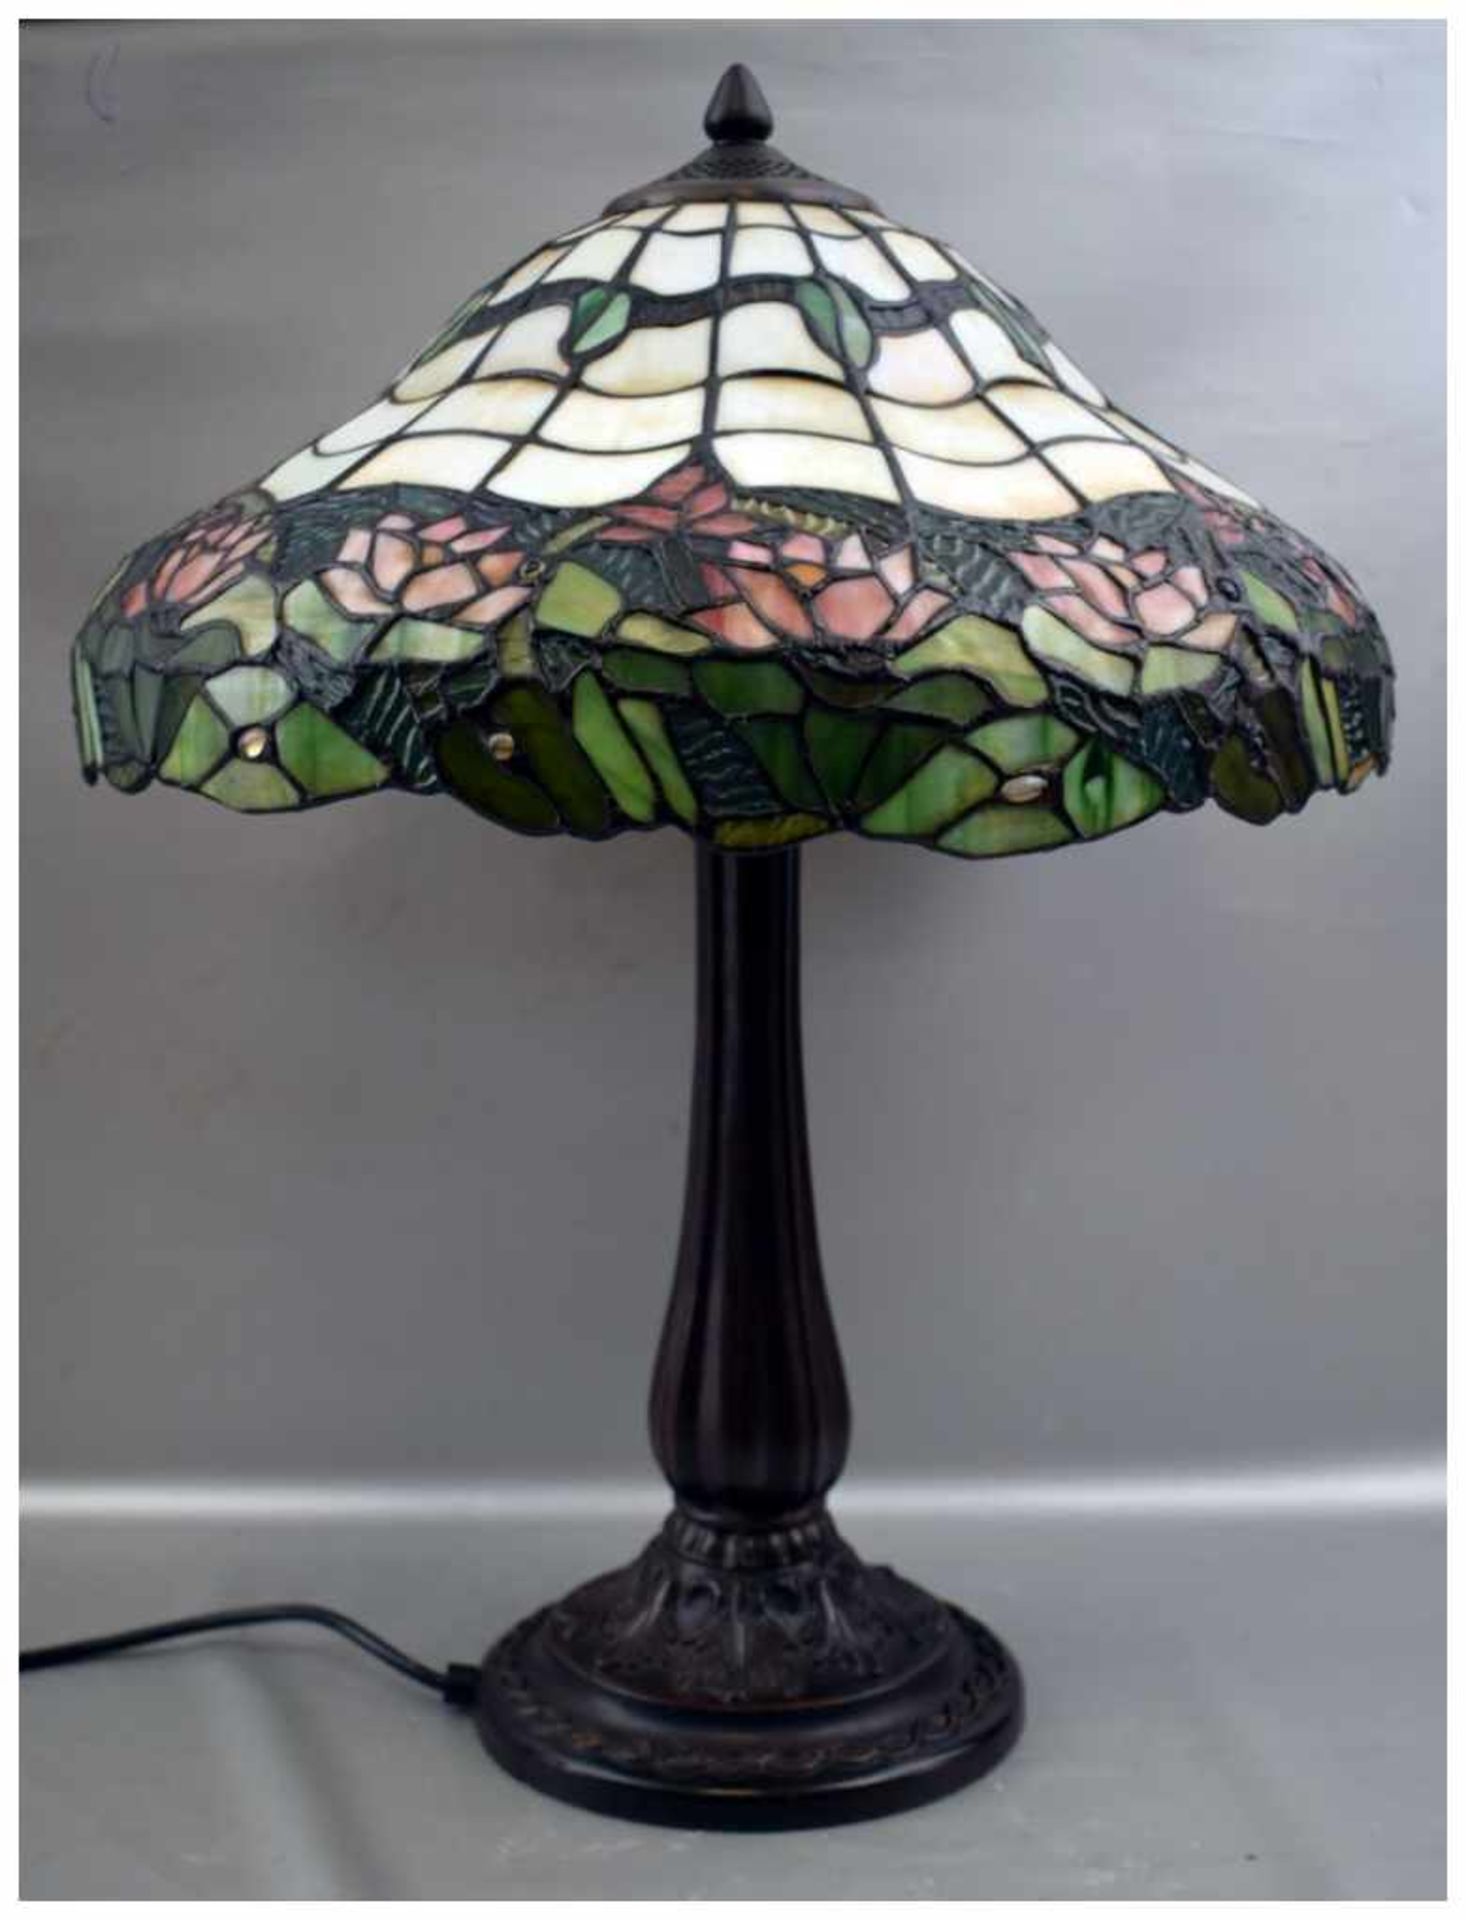 Tischlampe 2-lichtig, im Stil des Jugendstil, verzierter Metallfuß, Schirm mit Blütenranken bunt